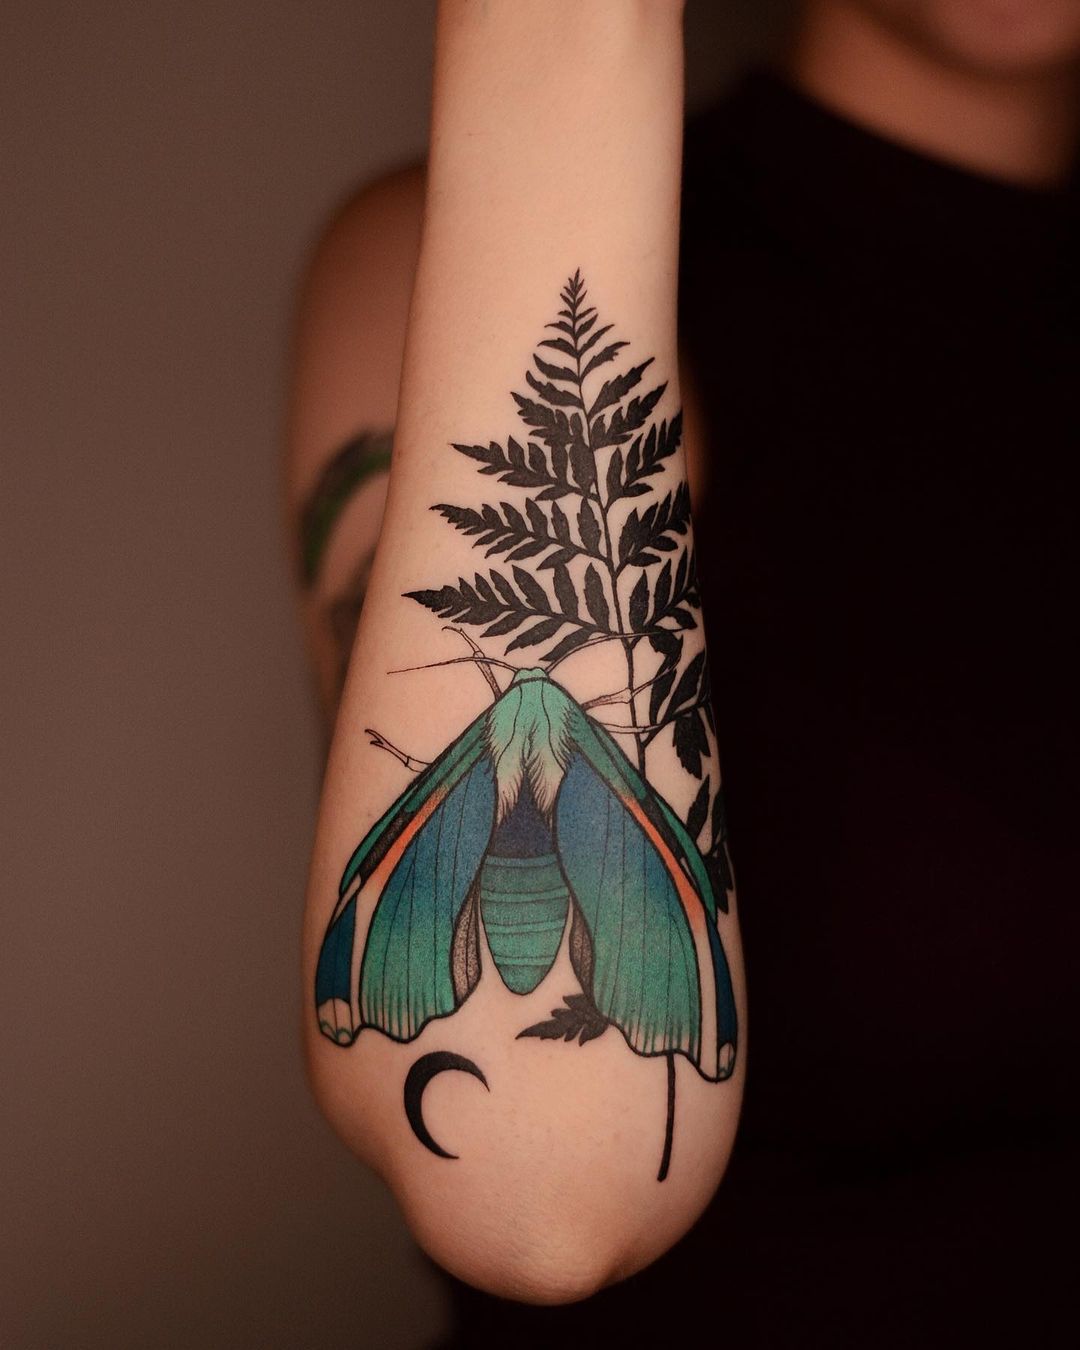 Nature-Inspired Tattoo Art by Dzo Lamka